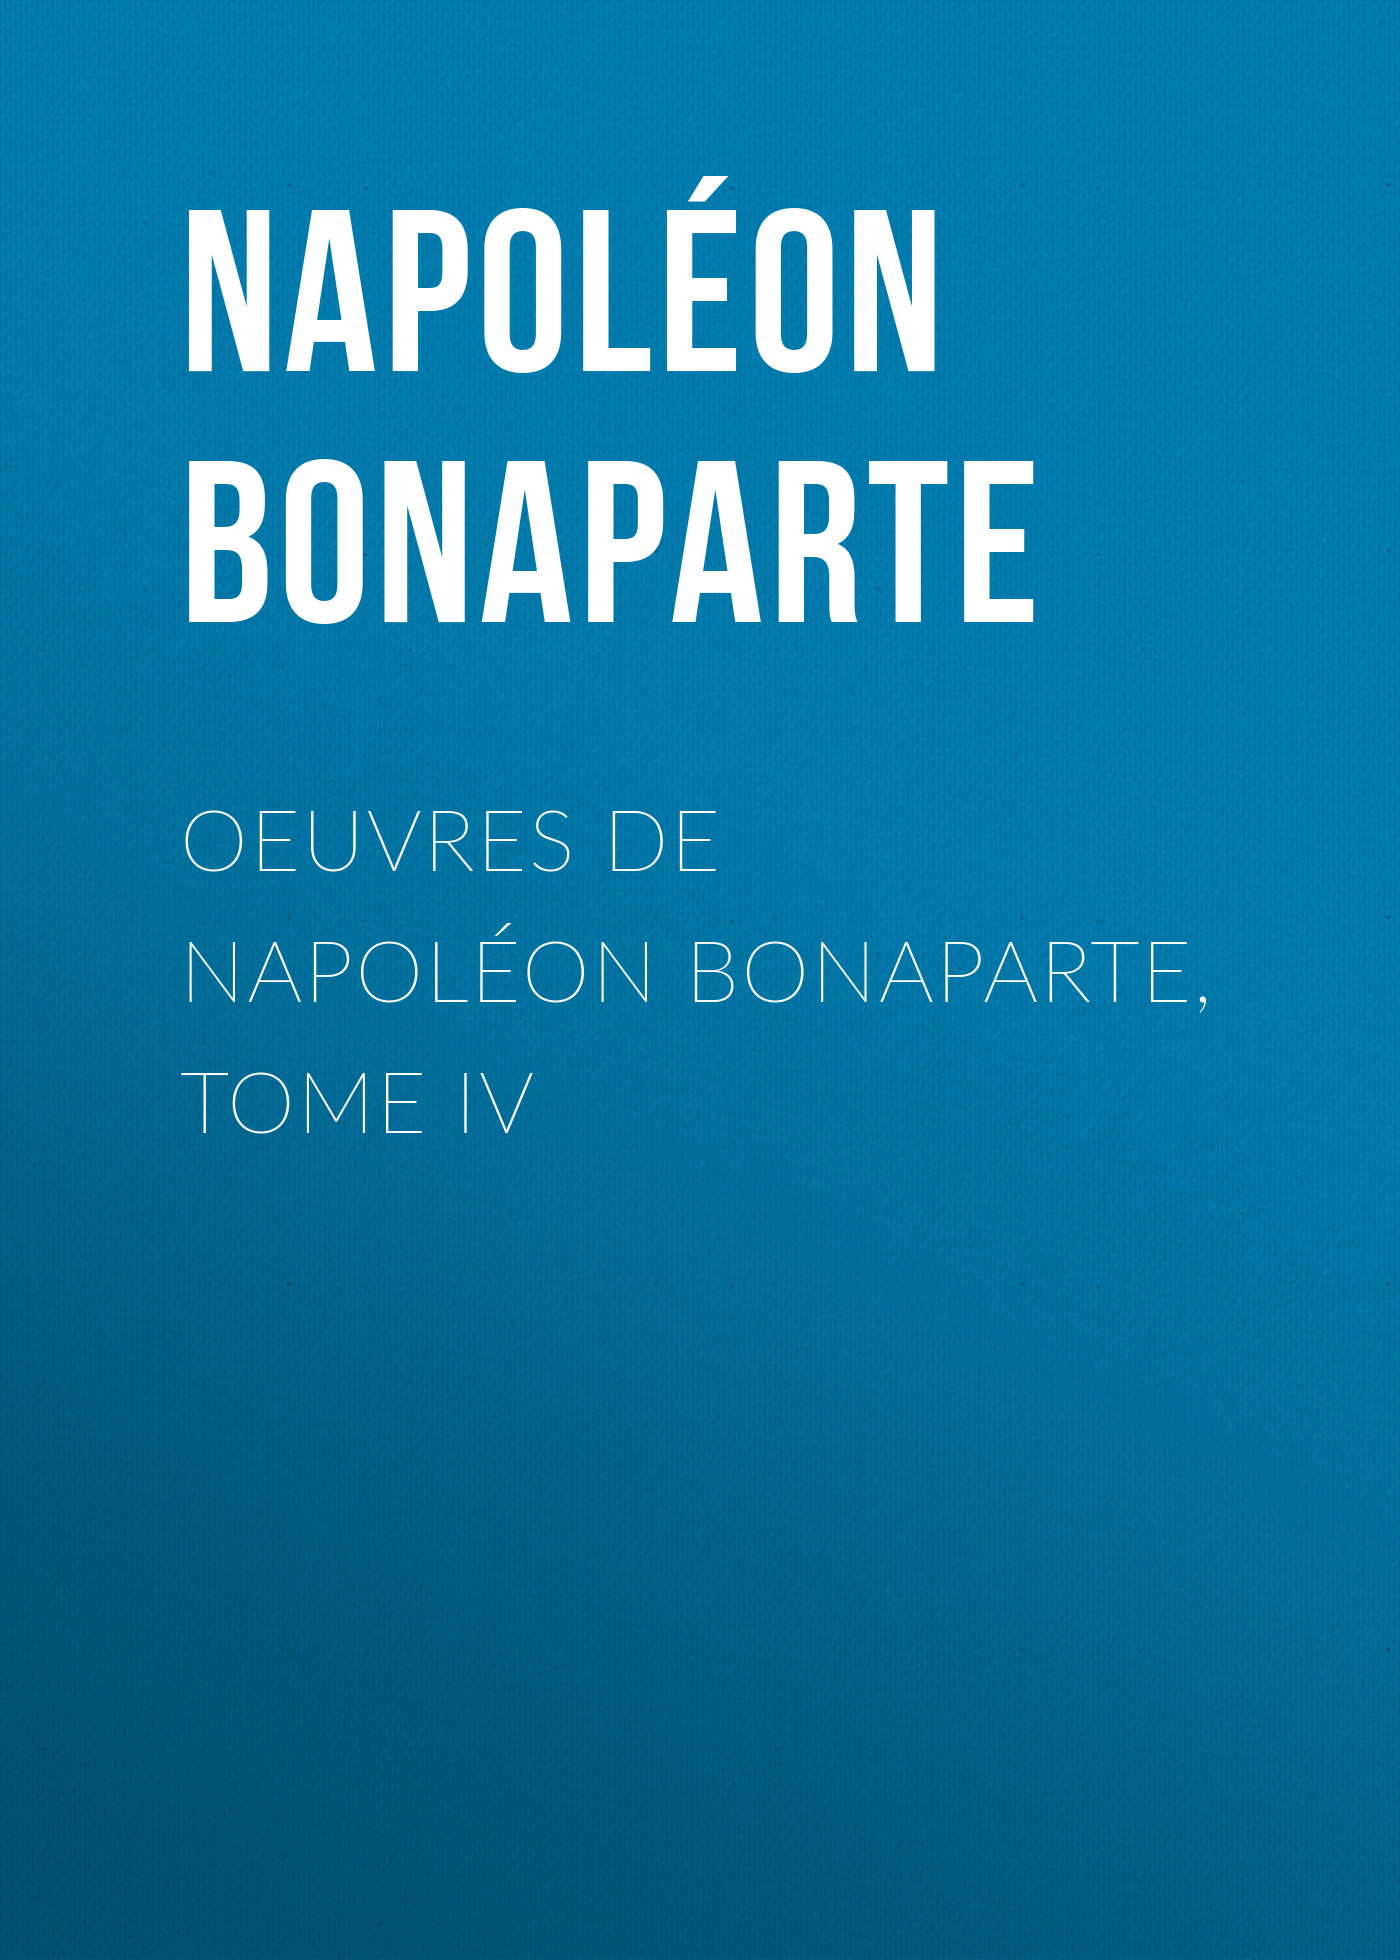 Книга Œuvres de Napoléon Bonaparte, Tome IV из серии , созданная Buonaparte Napoleon, может относится к жанру Биографии и Мемуары, Зарубежная старинная литература, Зарубежная классика. Стоимость электронной книги Œuvres de Napoléon Bonaparte, Tome IV с идентификатором 25293763 составляет 0 руб.